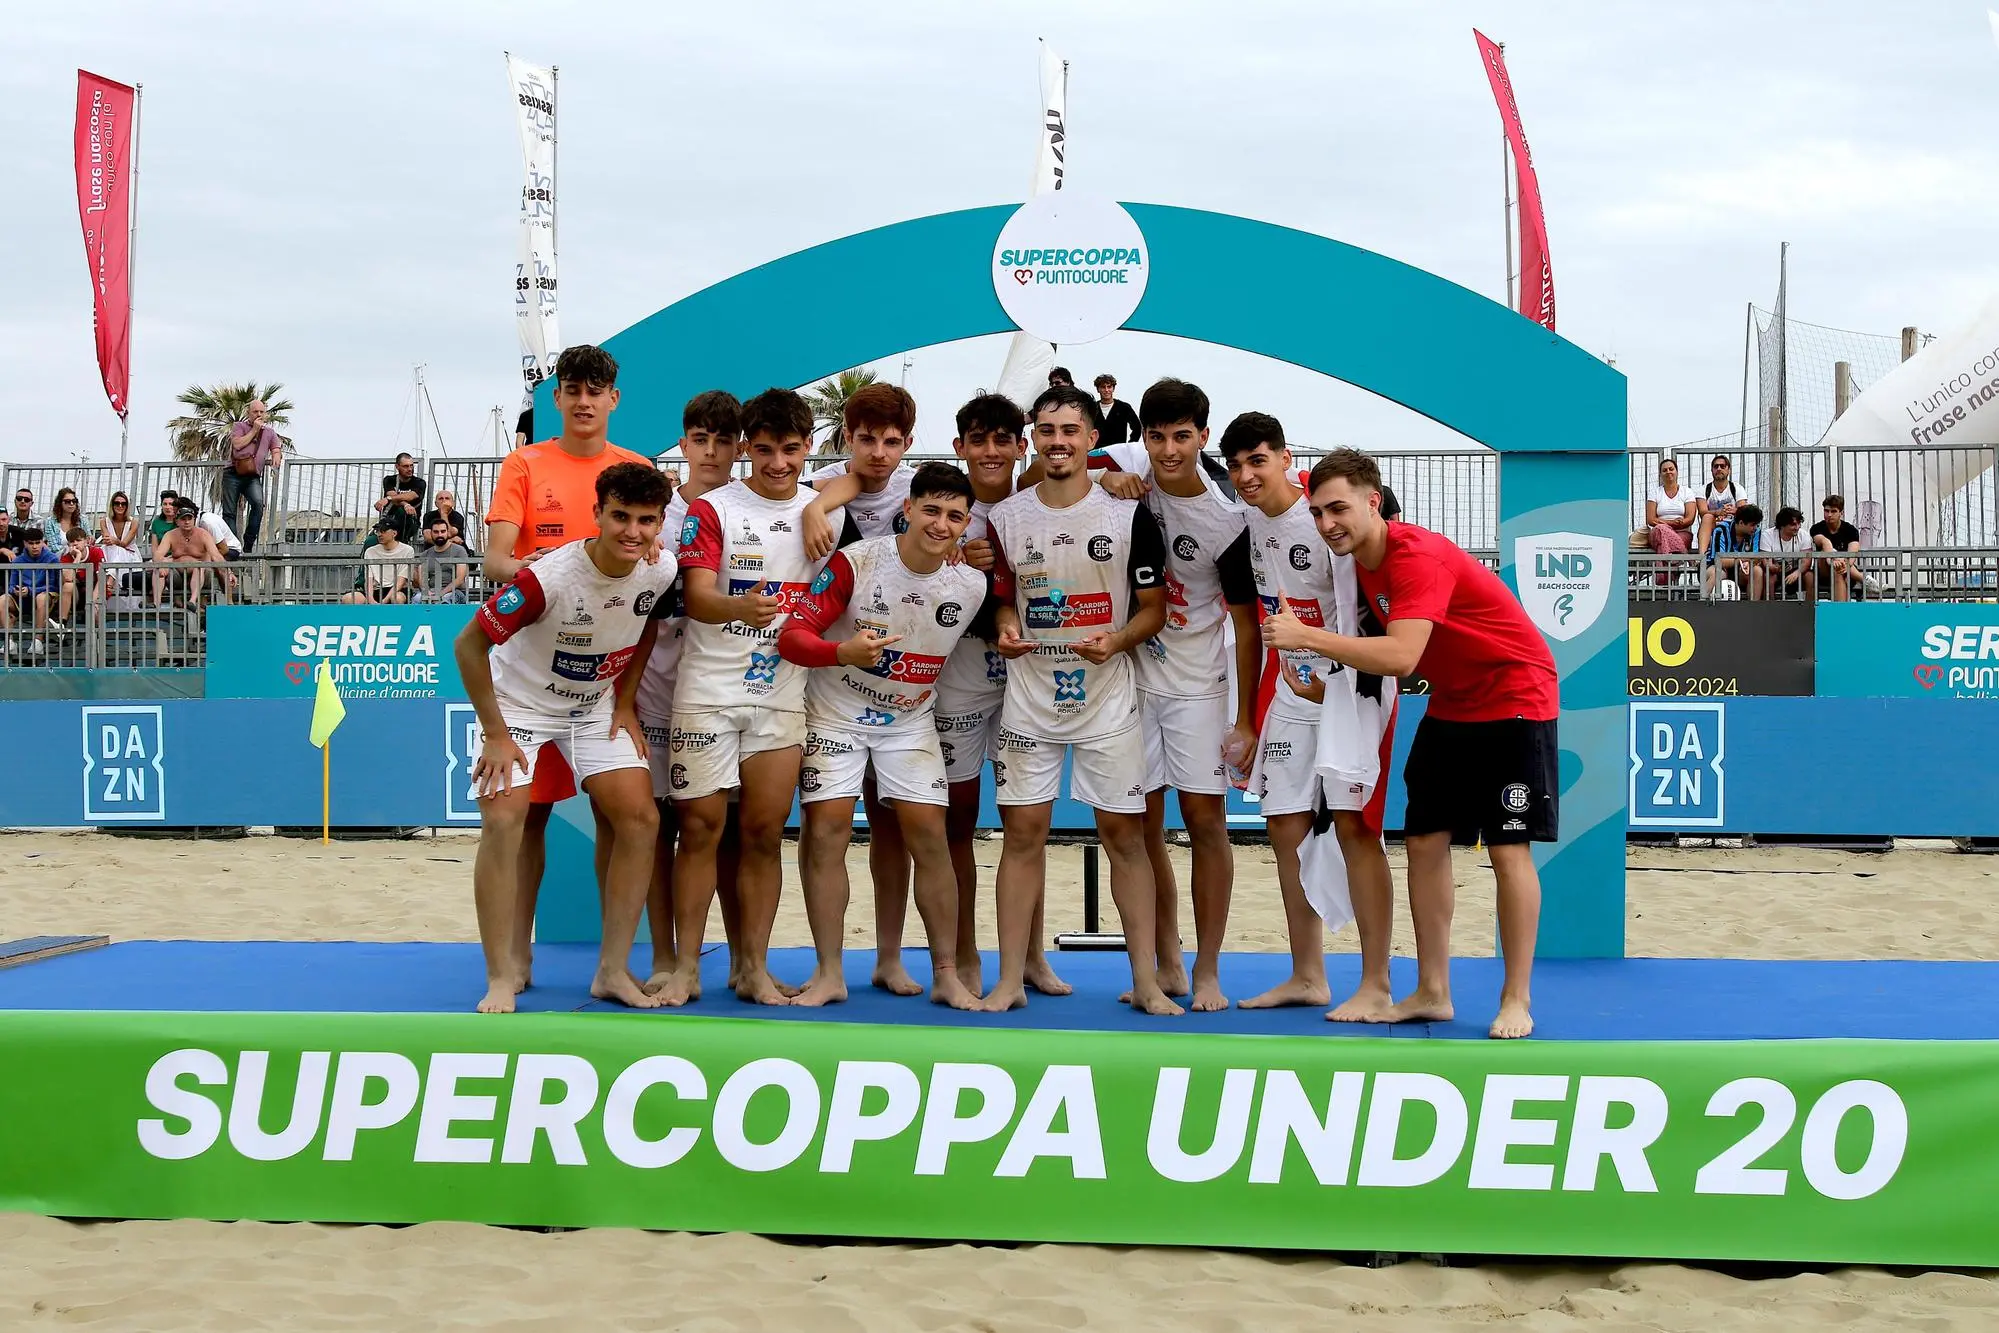 La premiazione dell'Under-20 del Cagliari Beach Soccer nella Supercoppa (foto concessa da LND)